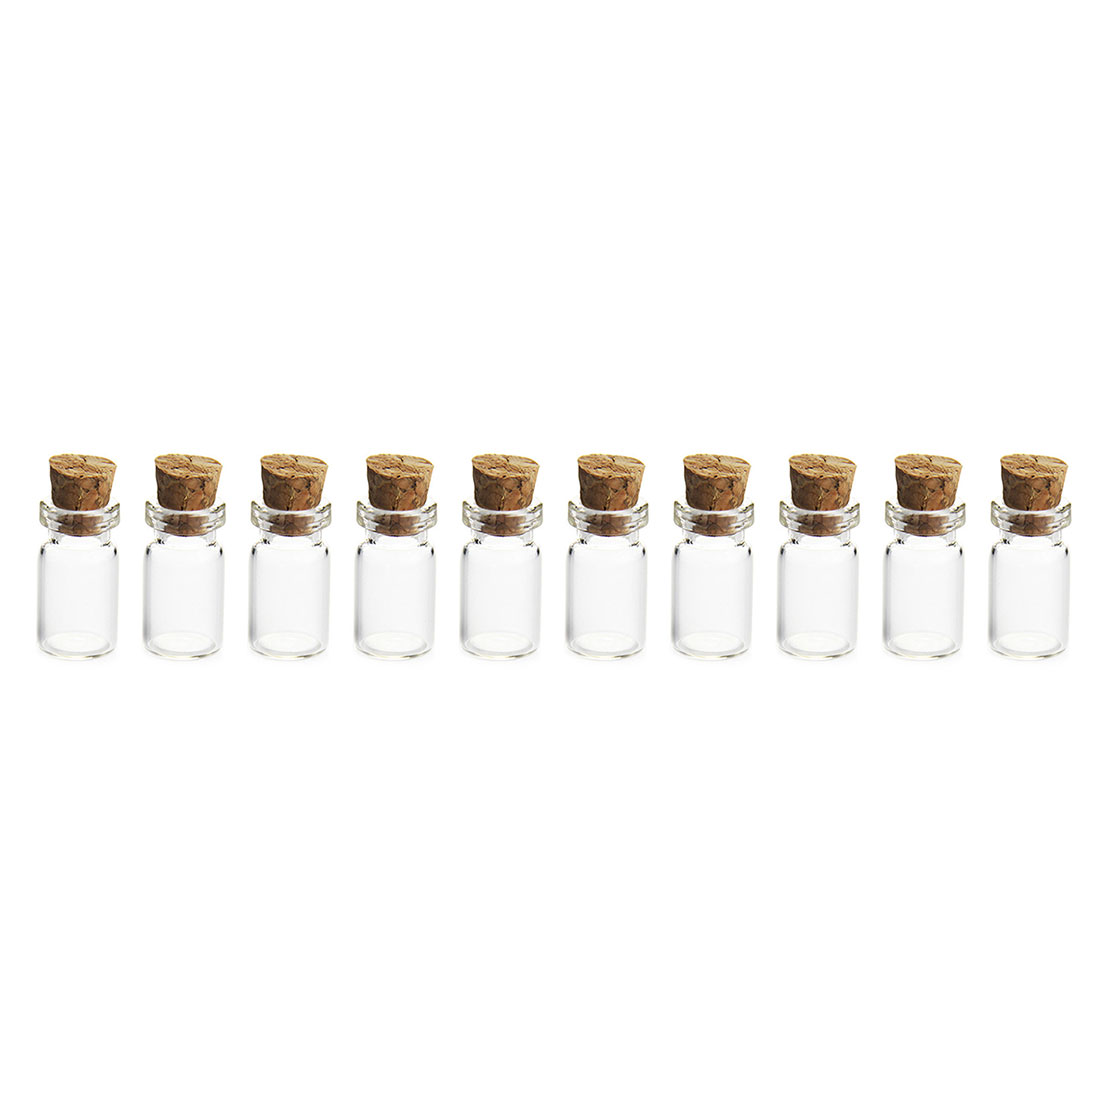 20 Stks/set 12*24 Mm 1.5 Ml Mini Glazen Flessen Lege Sample Potjes Met Kurk Voor diy Craft Decoratie-Transparant